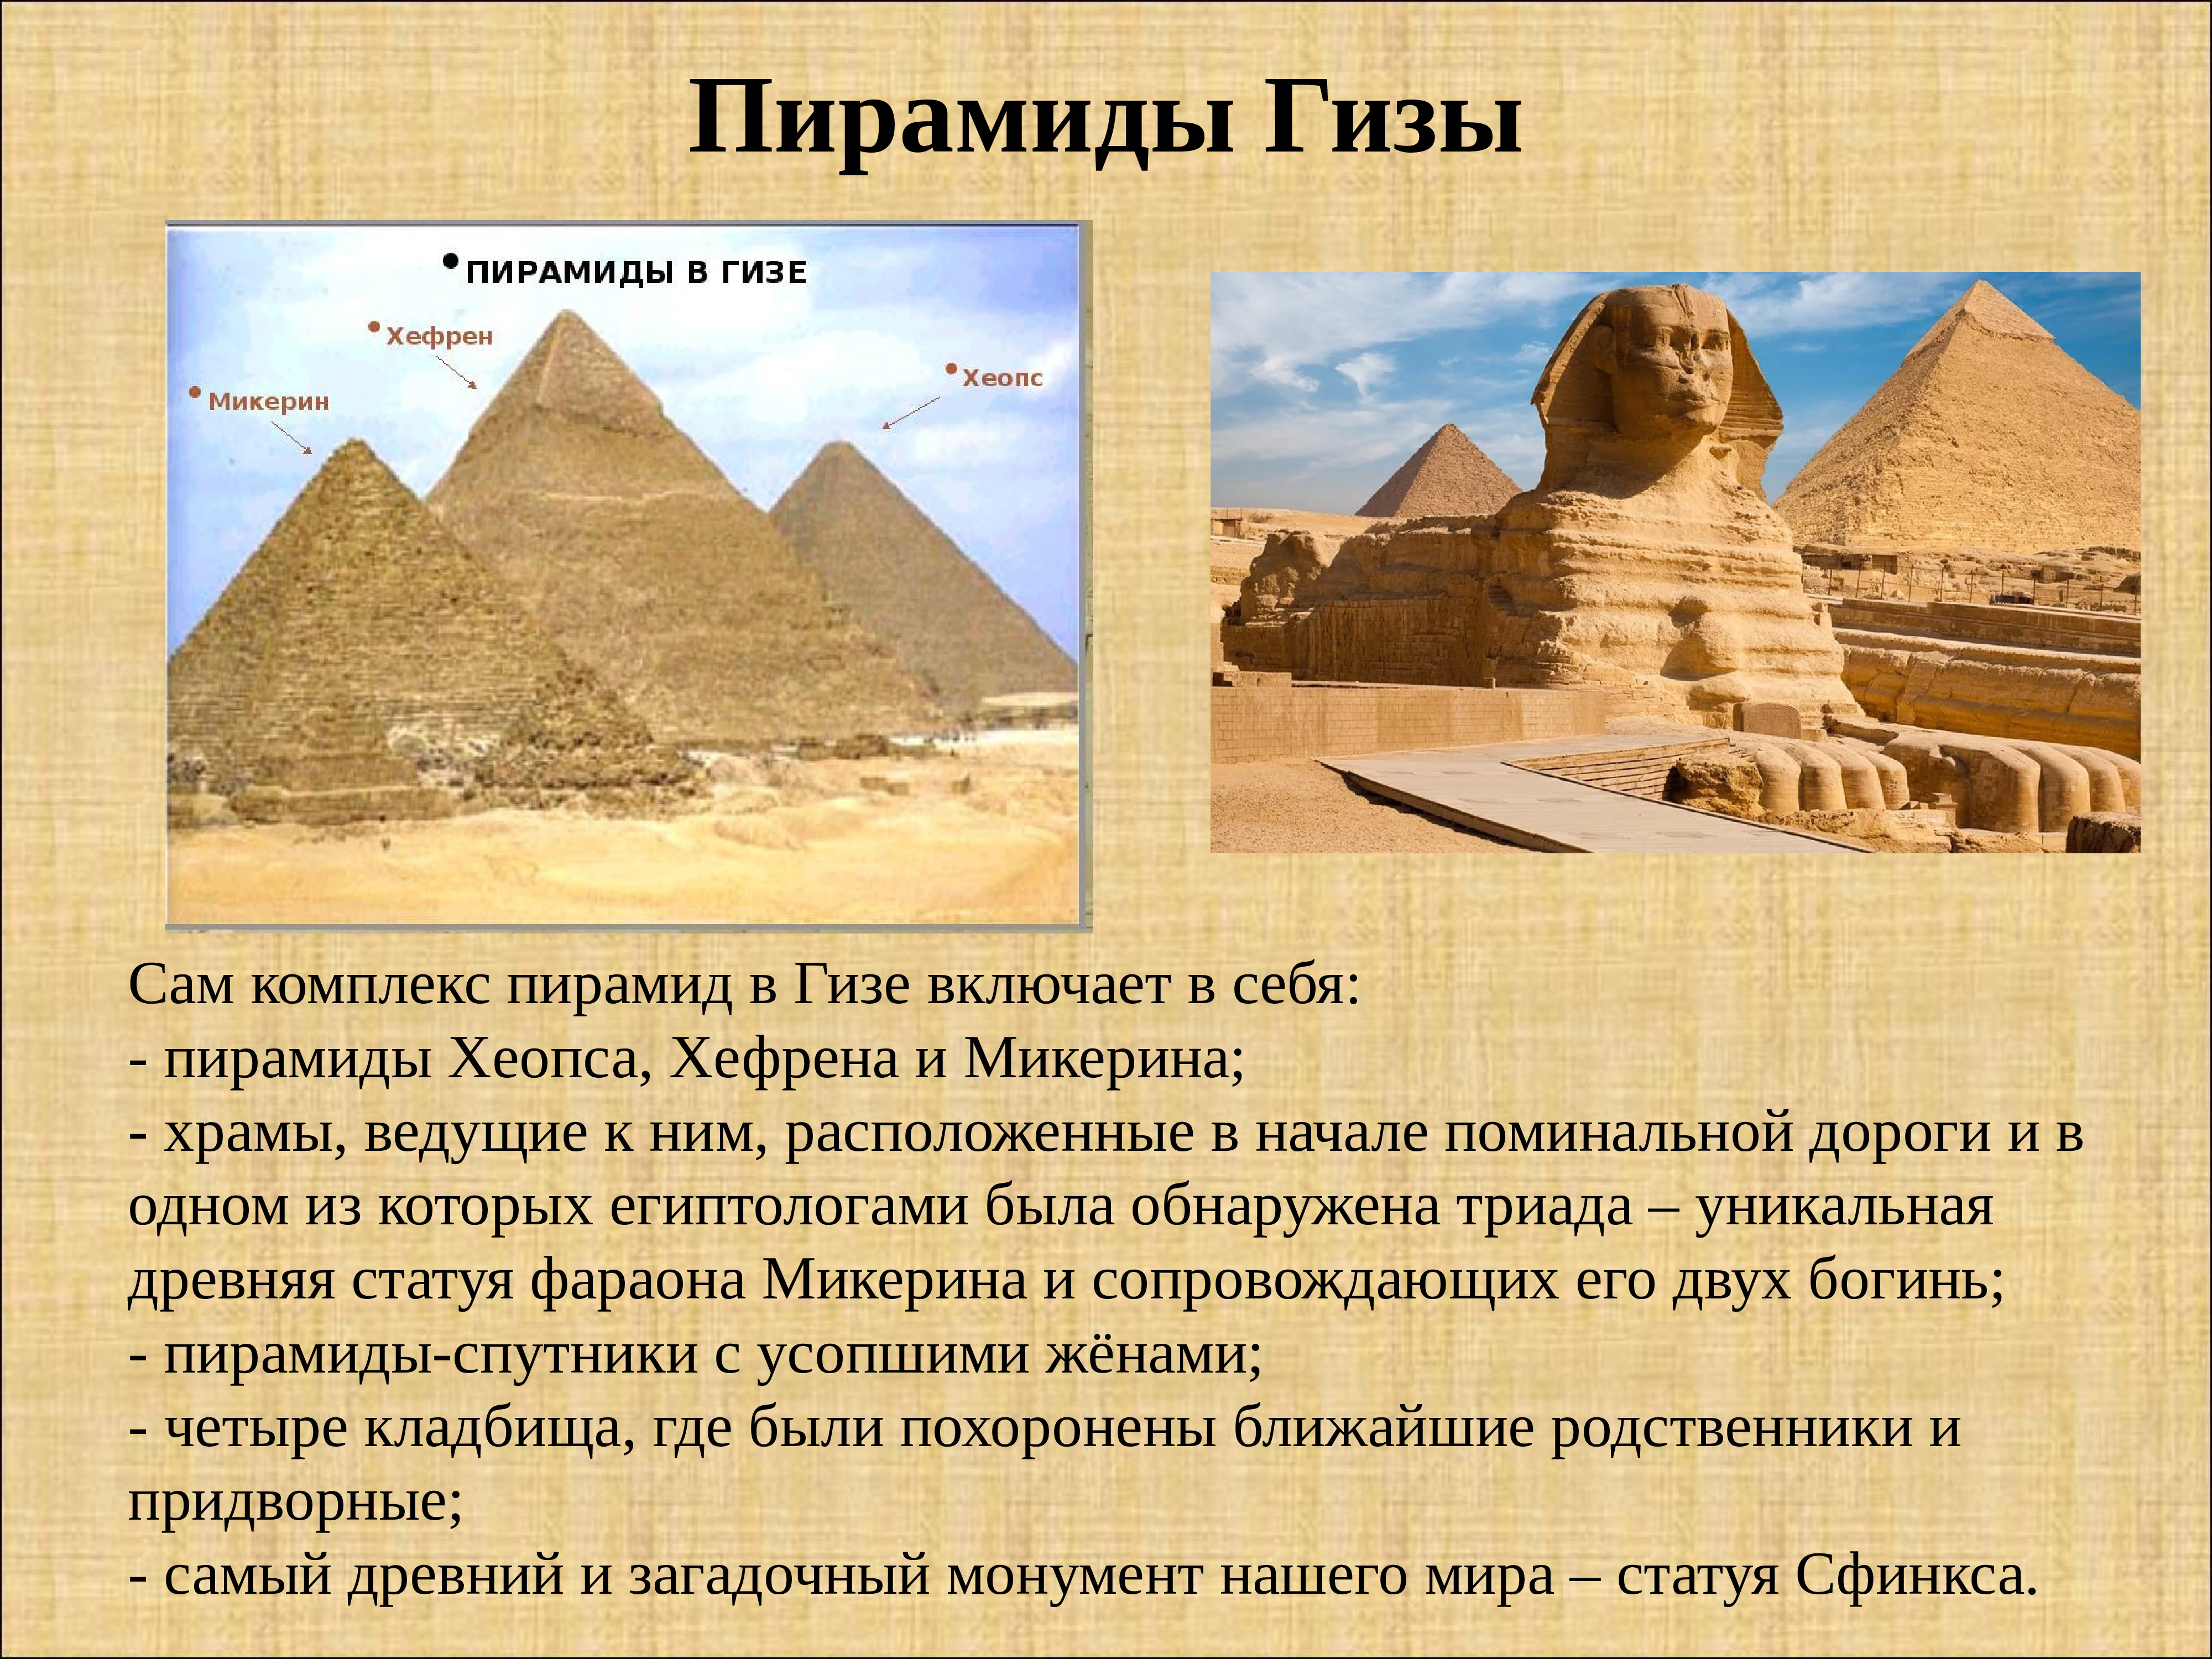 Культура древнего Египта -пирамиды Гизы